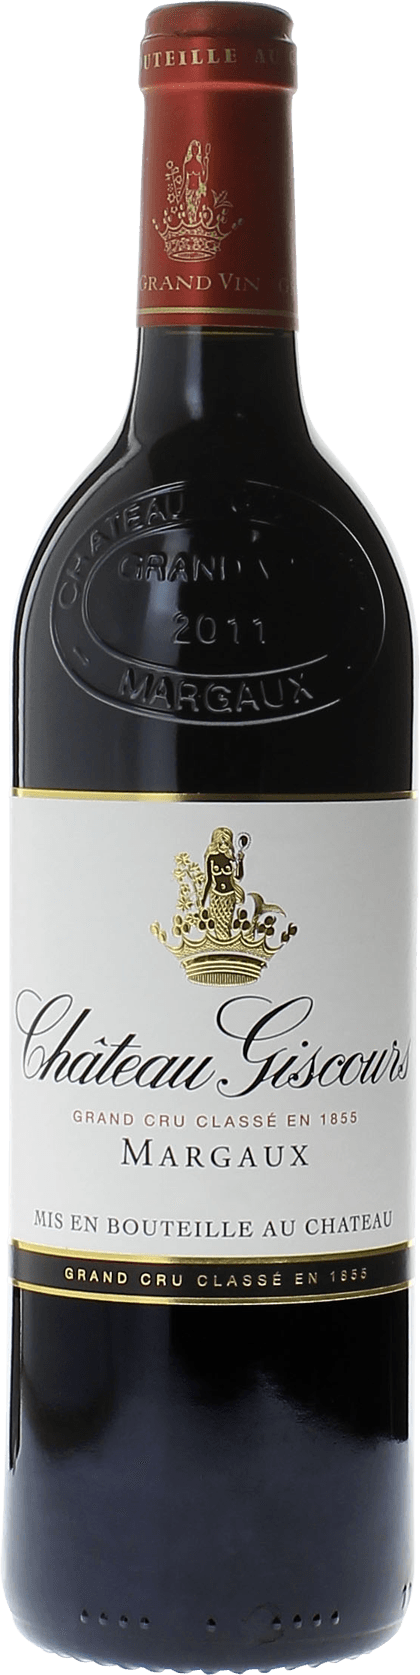 Giscours 1999 3me Grand cru class Margaux, Bordeaux rouge